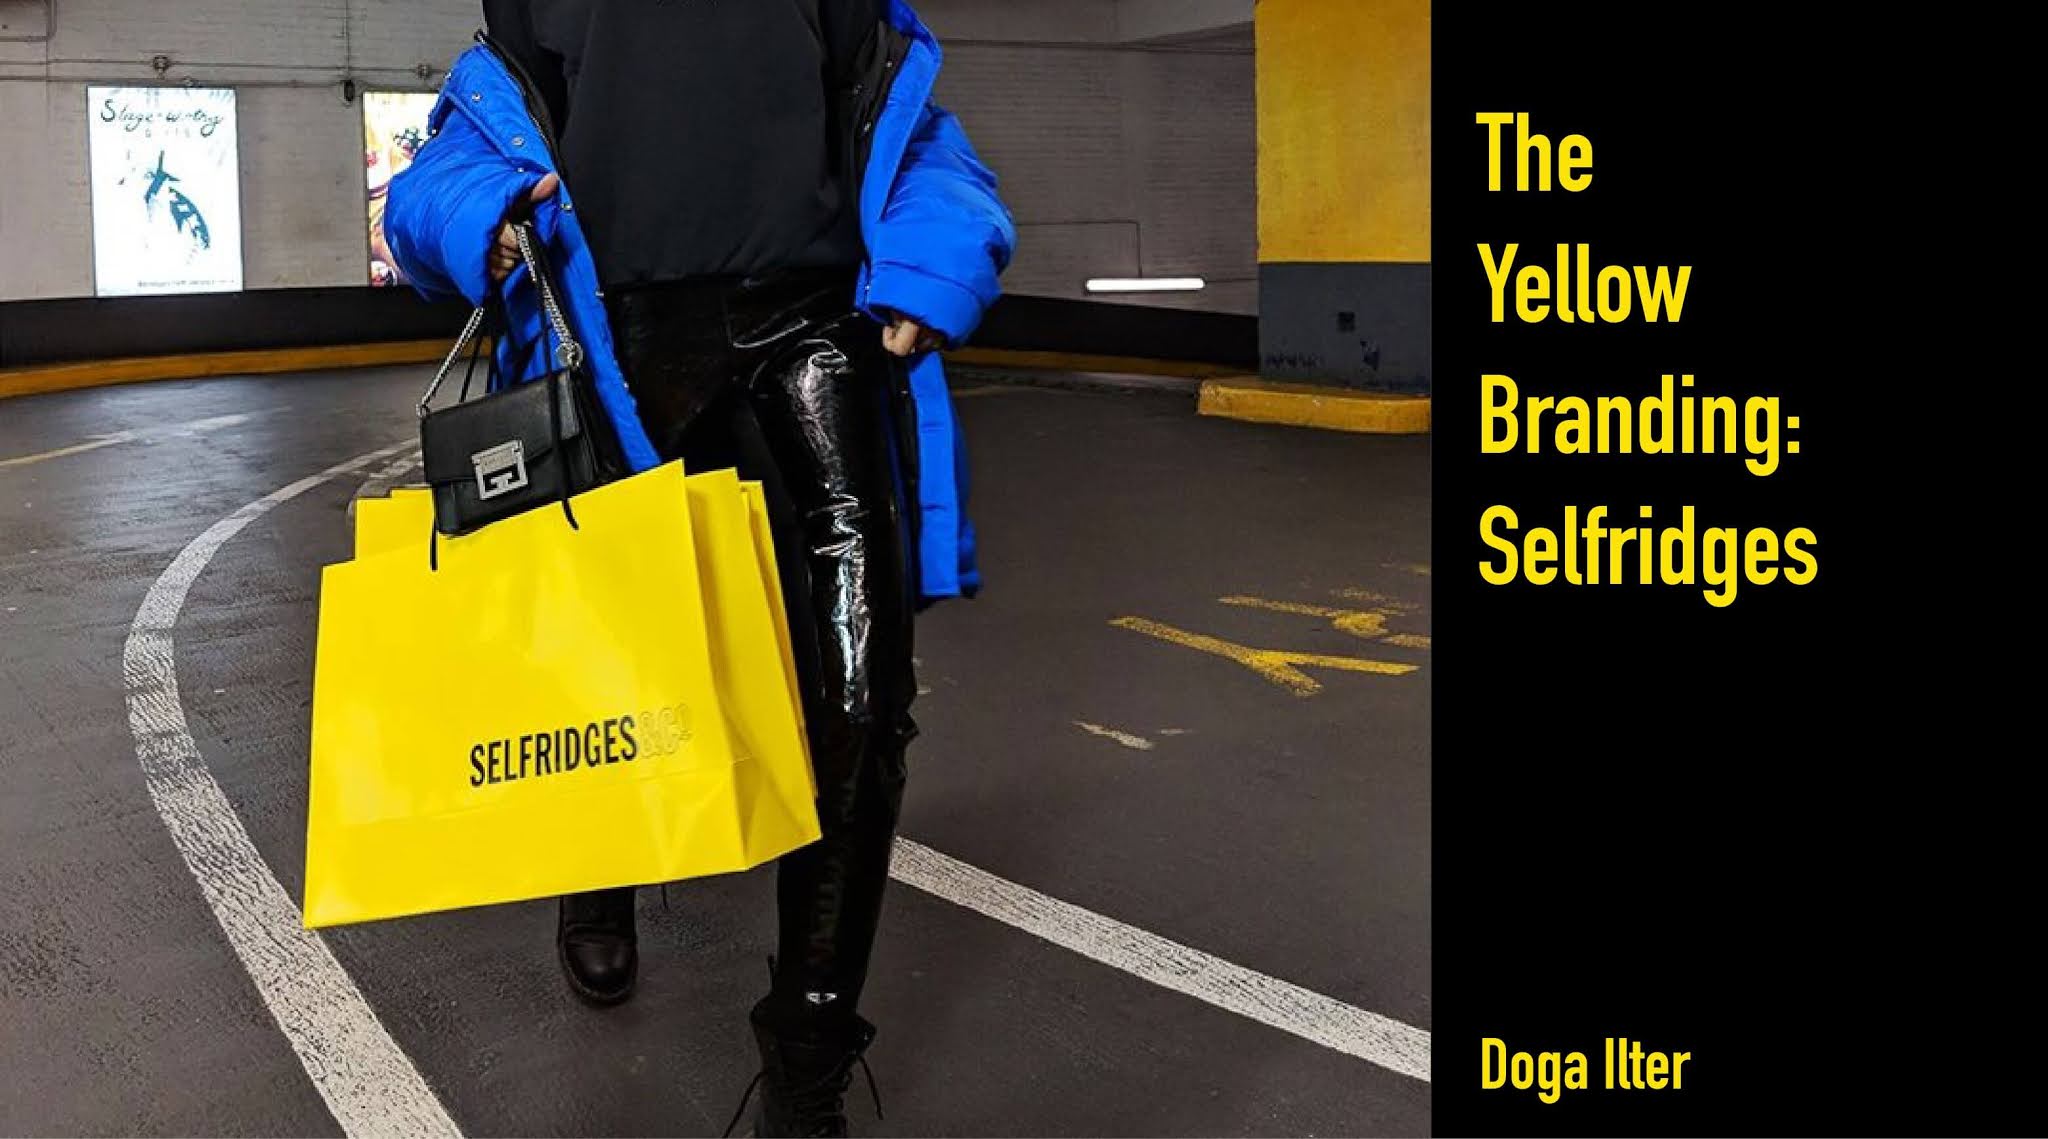 Fashionziner: The Yellow Branding: Selfridges